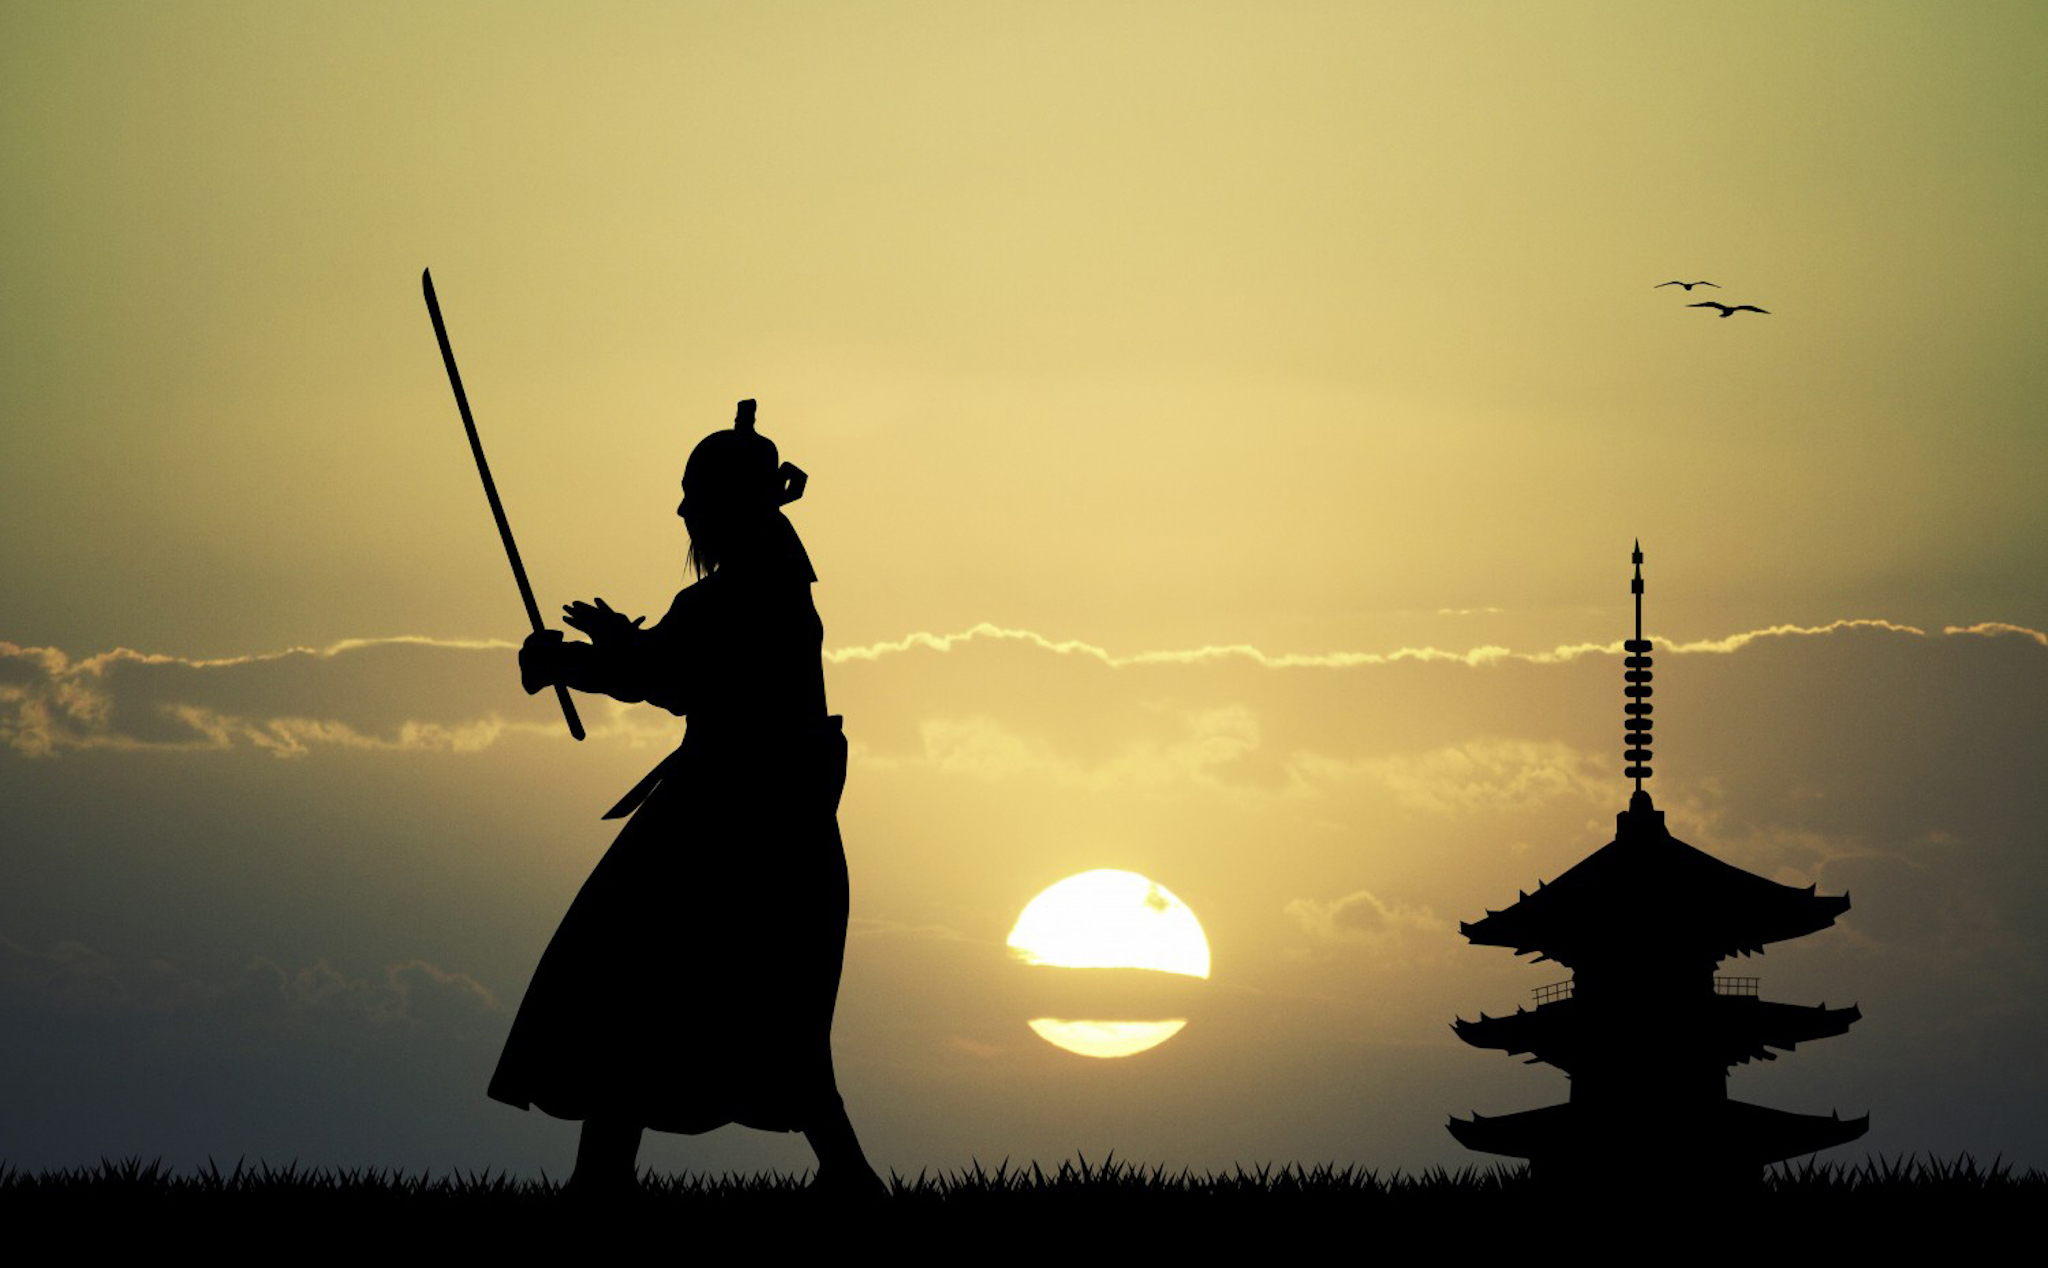 Lần đầu tiên sau hơn 400 năm, Nhật Bản chiêu sinh khoá đào tạo Ninja, không yêu cầu quốc tịch